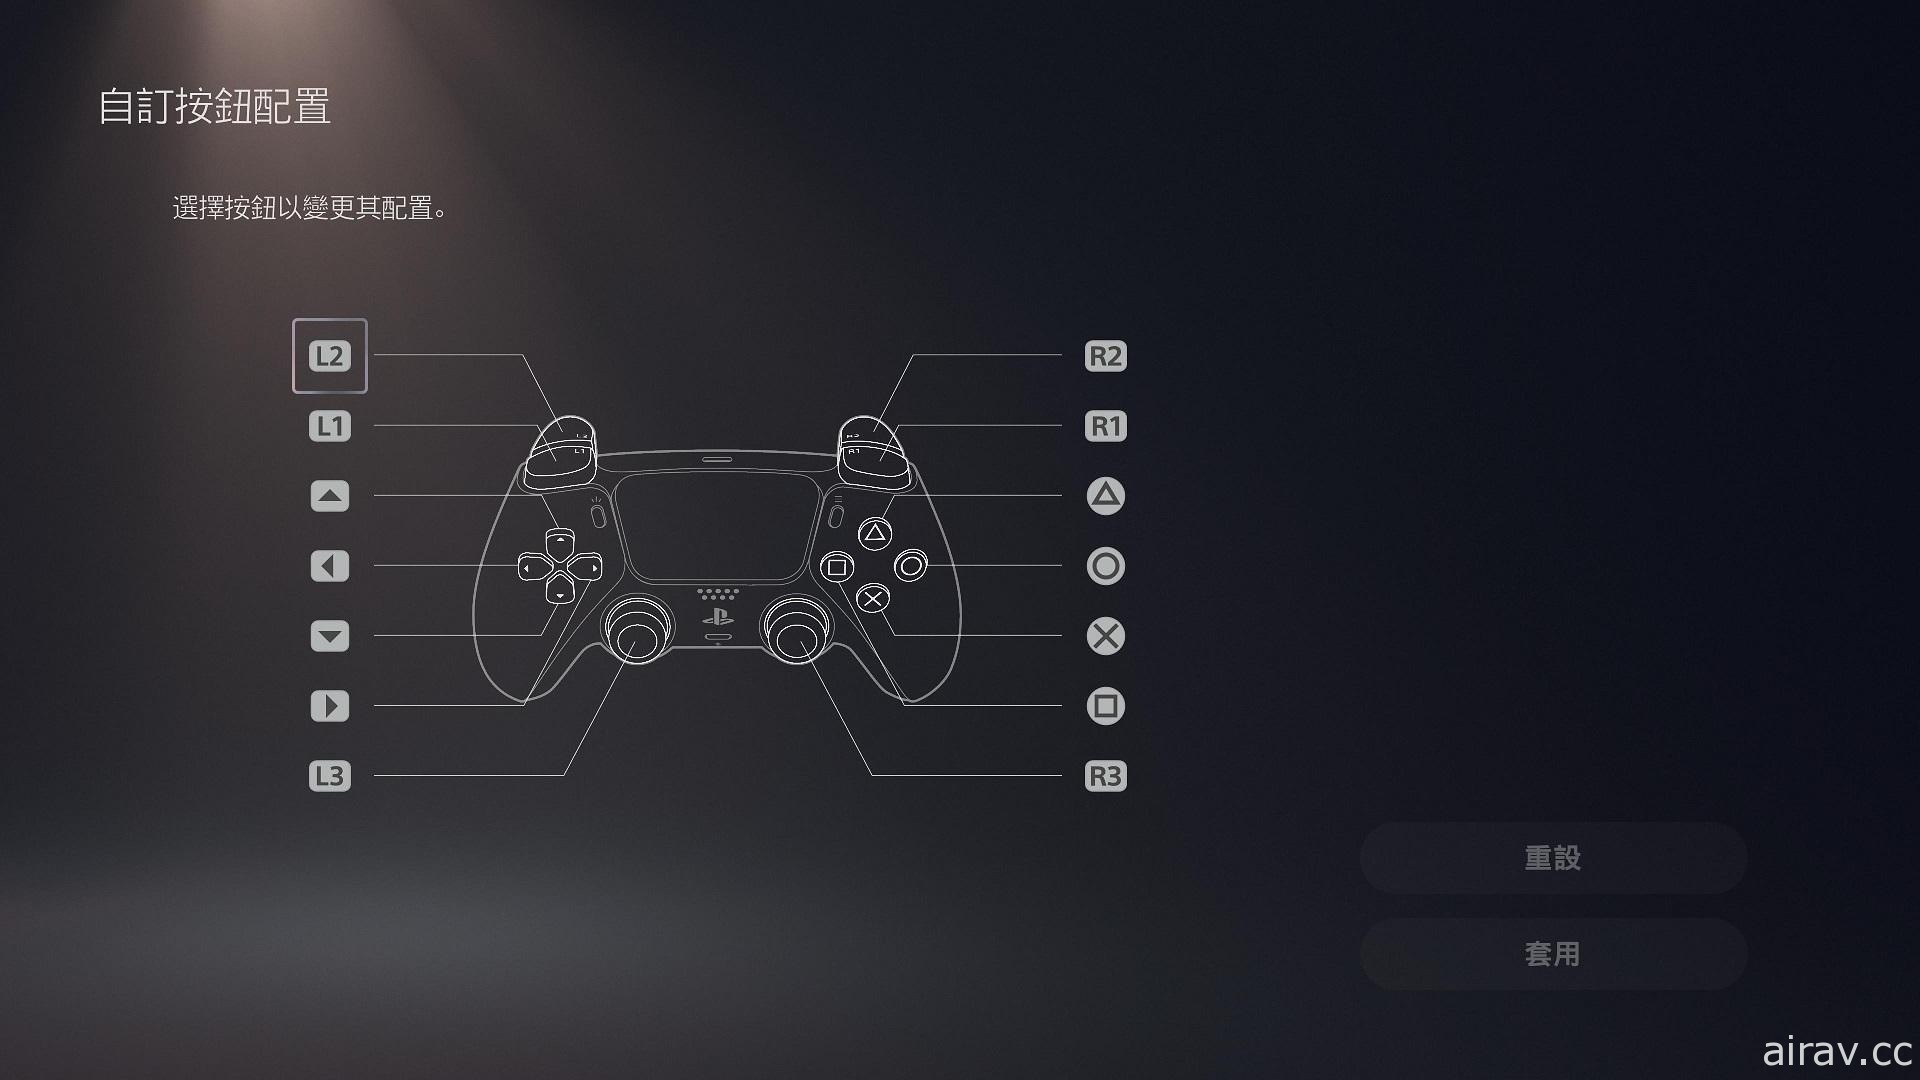 如何更改系统画面下的 OX 钮配置？介绍使用 PS5 主机时的 26 种便利小技巧